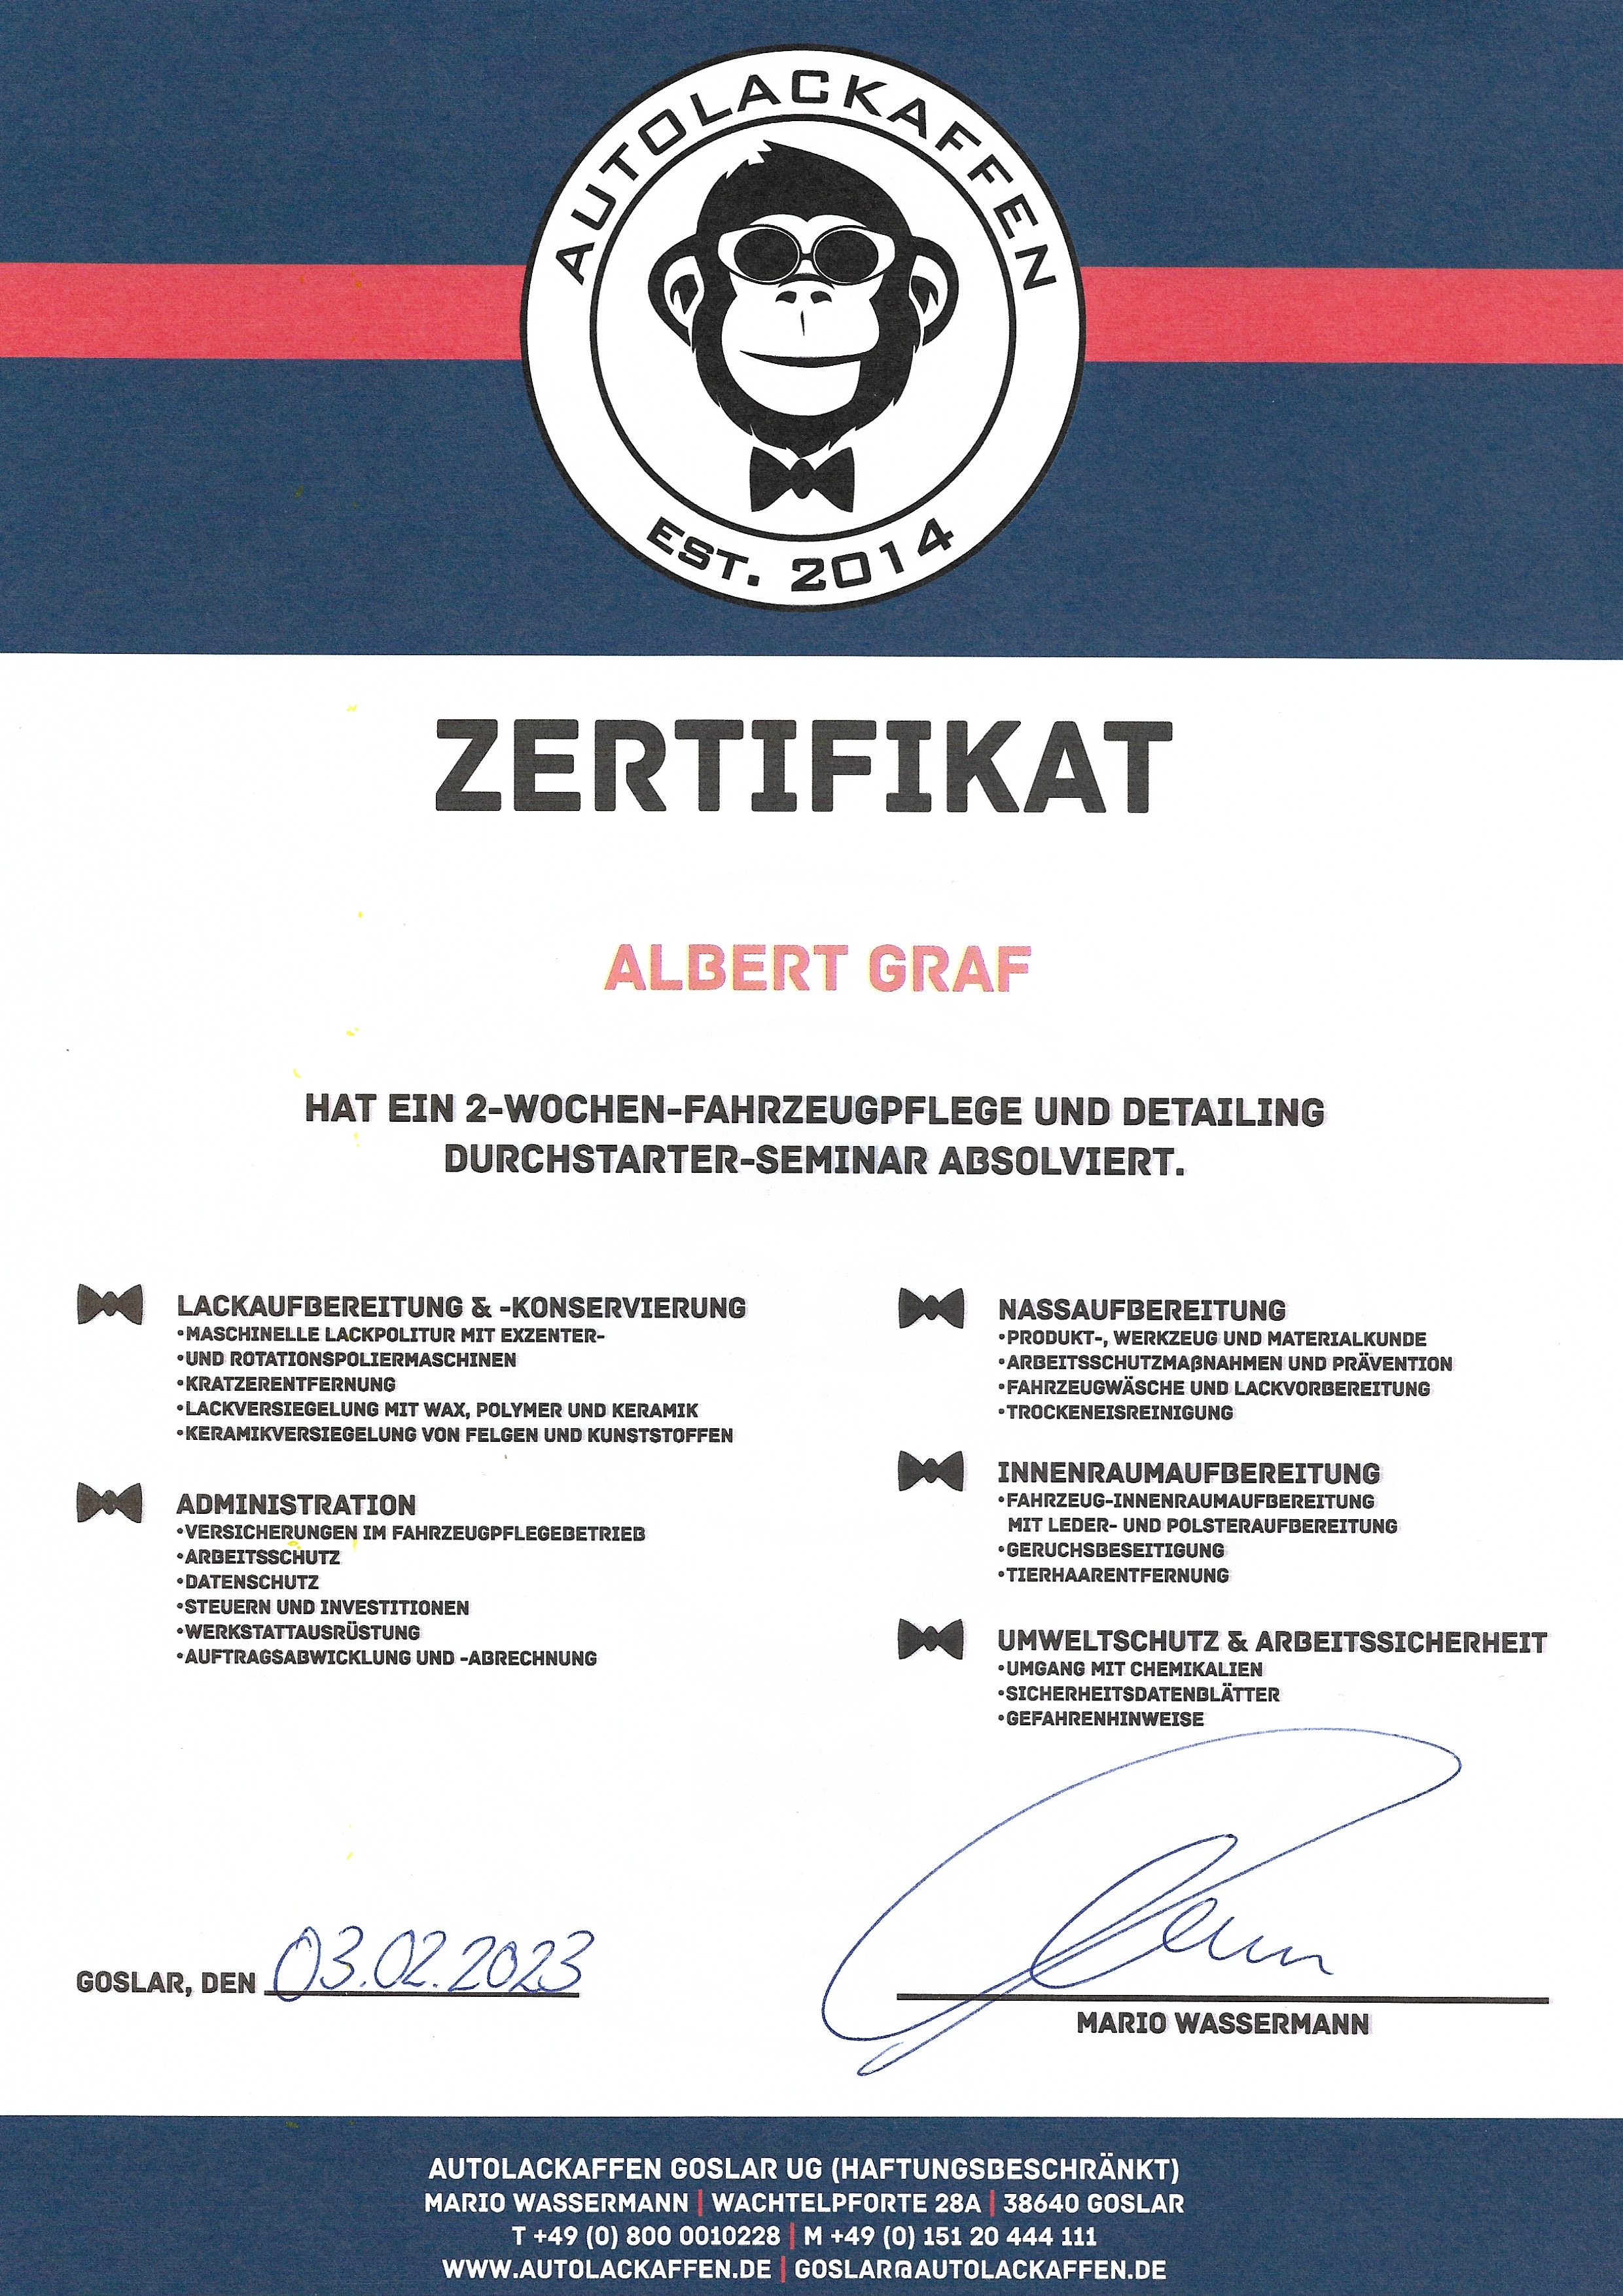 Autolackaffen Certificate